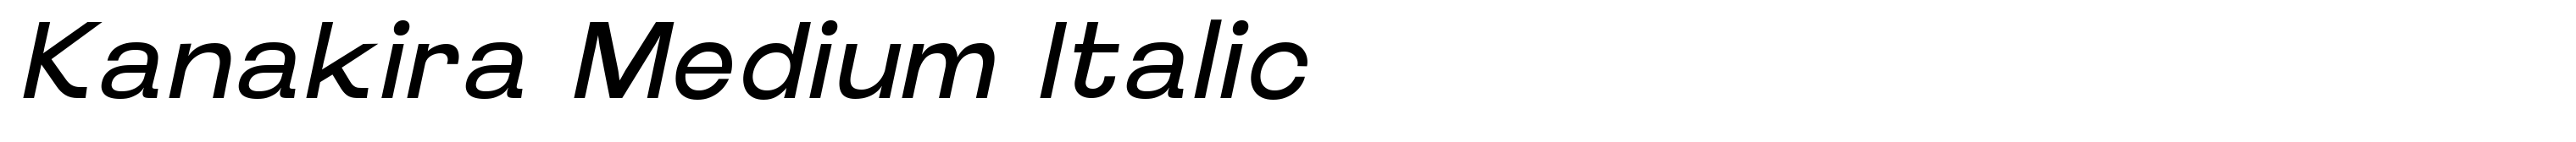 Kanakira Medium Italic